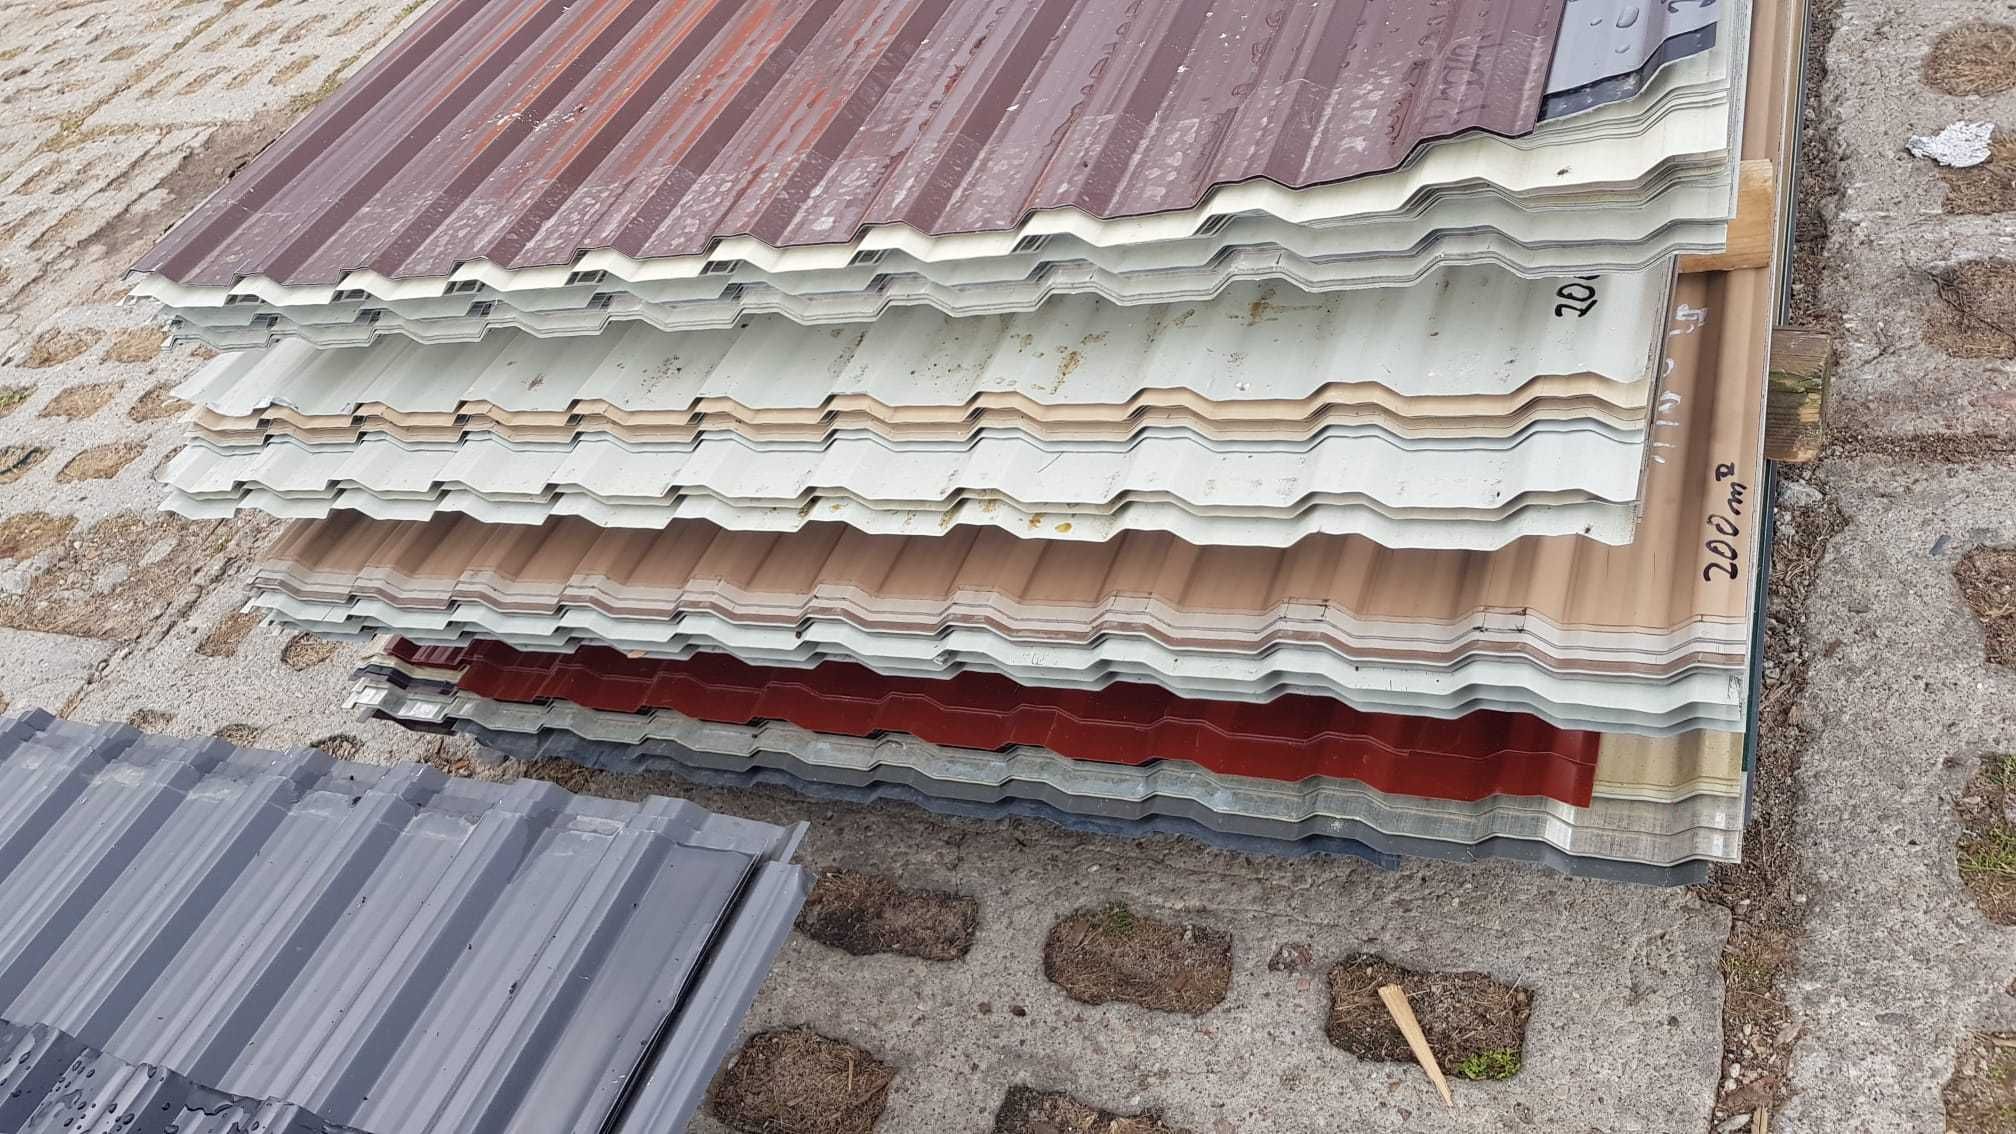 Blacha trapezowa trapez blachy trapezowe TANIO dach wiata garaż hala